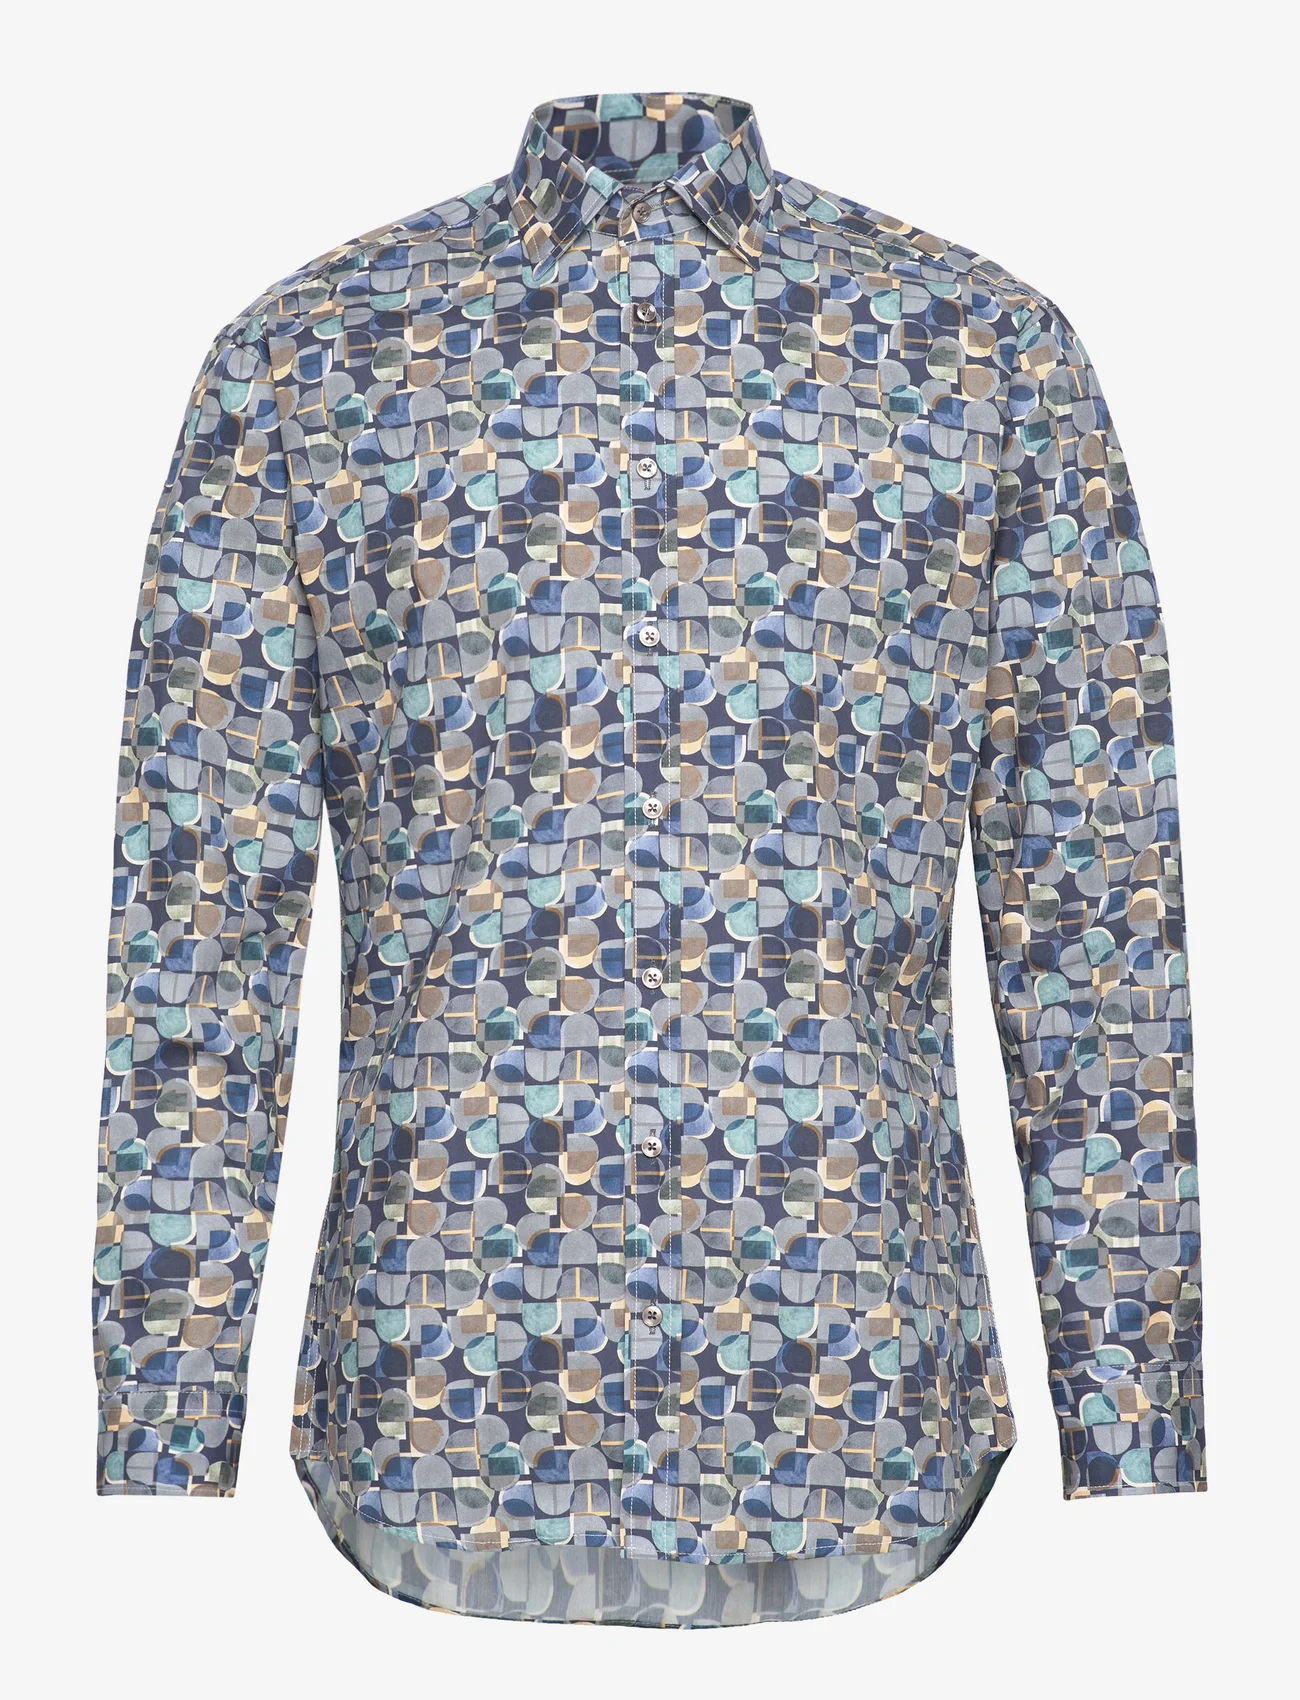 Bosweel Shirts Est. 1937 - Regular fit Mens shirt - business-hemden - blue - 0